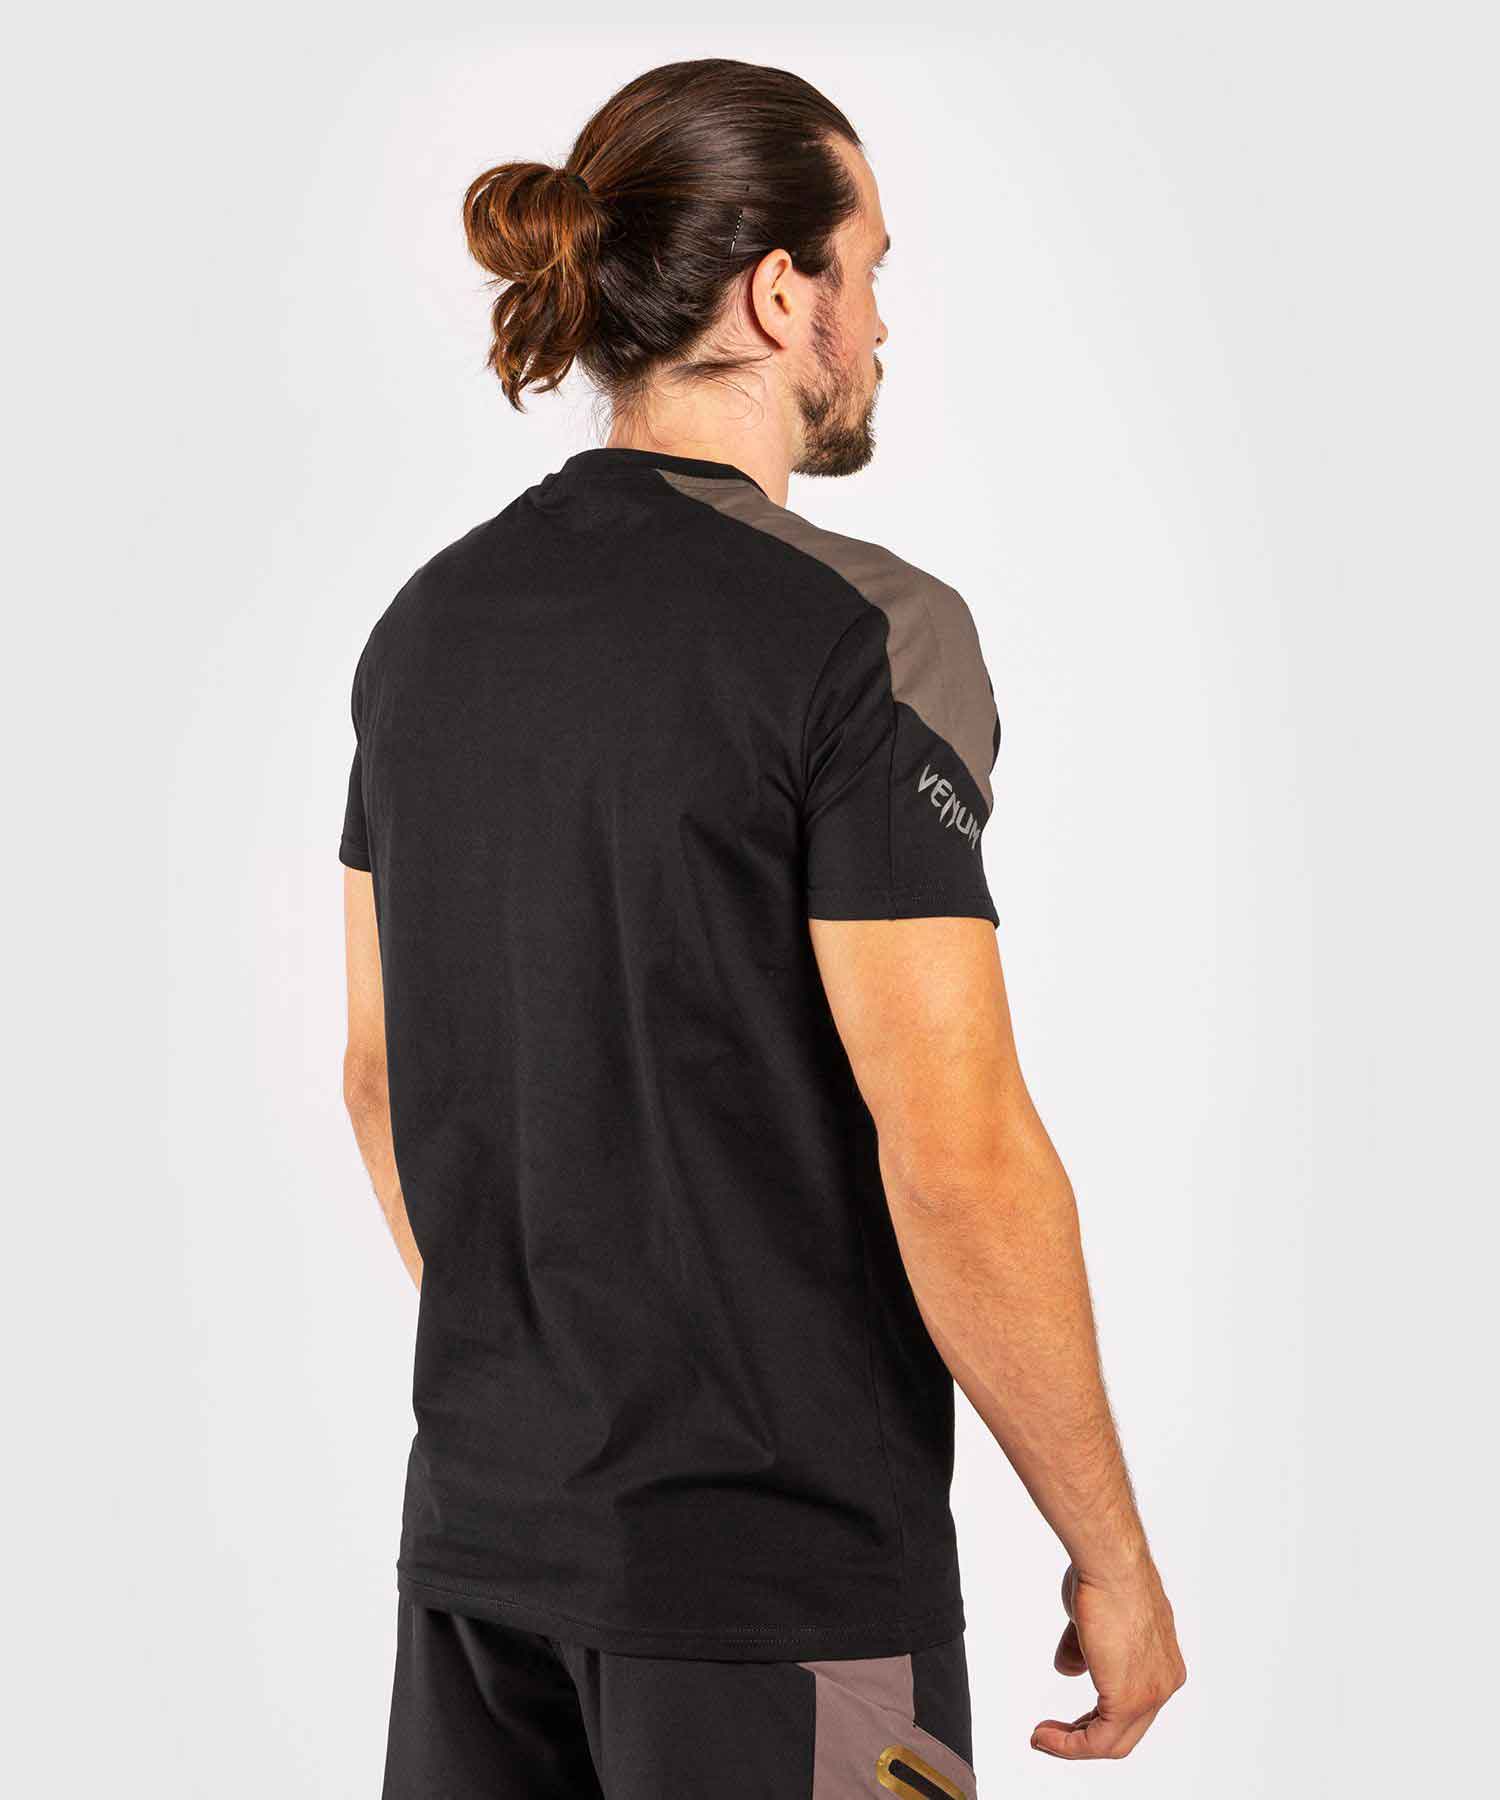 VENUM／ヴェナム　Tシャツ　　CARGO T-SHIRT／カーゴ Tシャツ（黒／サンドグレー）